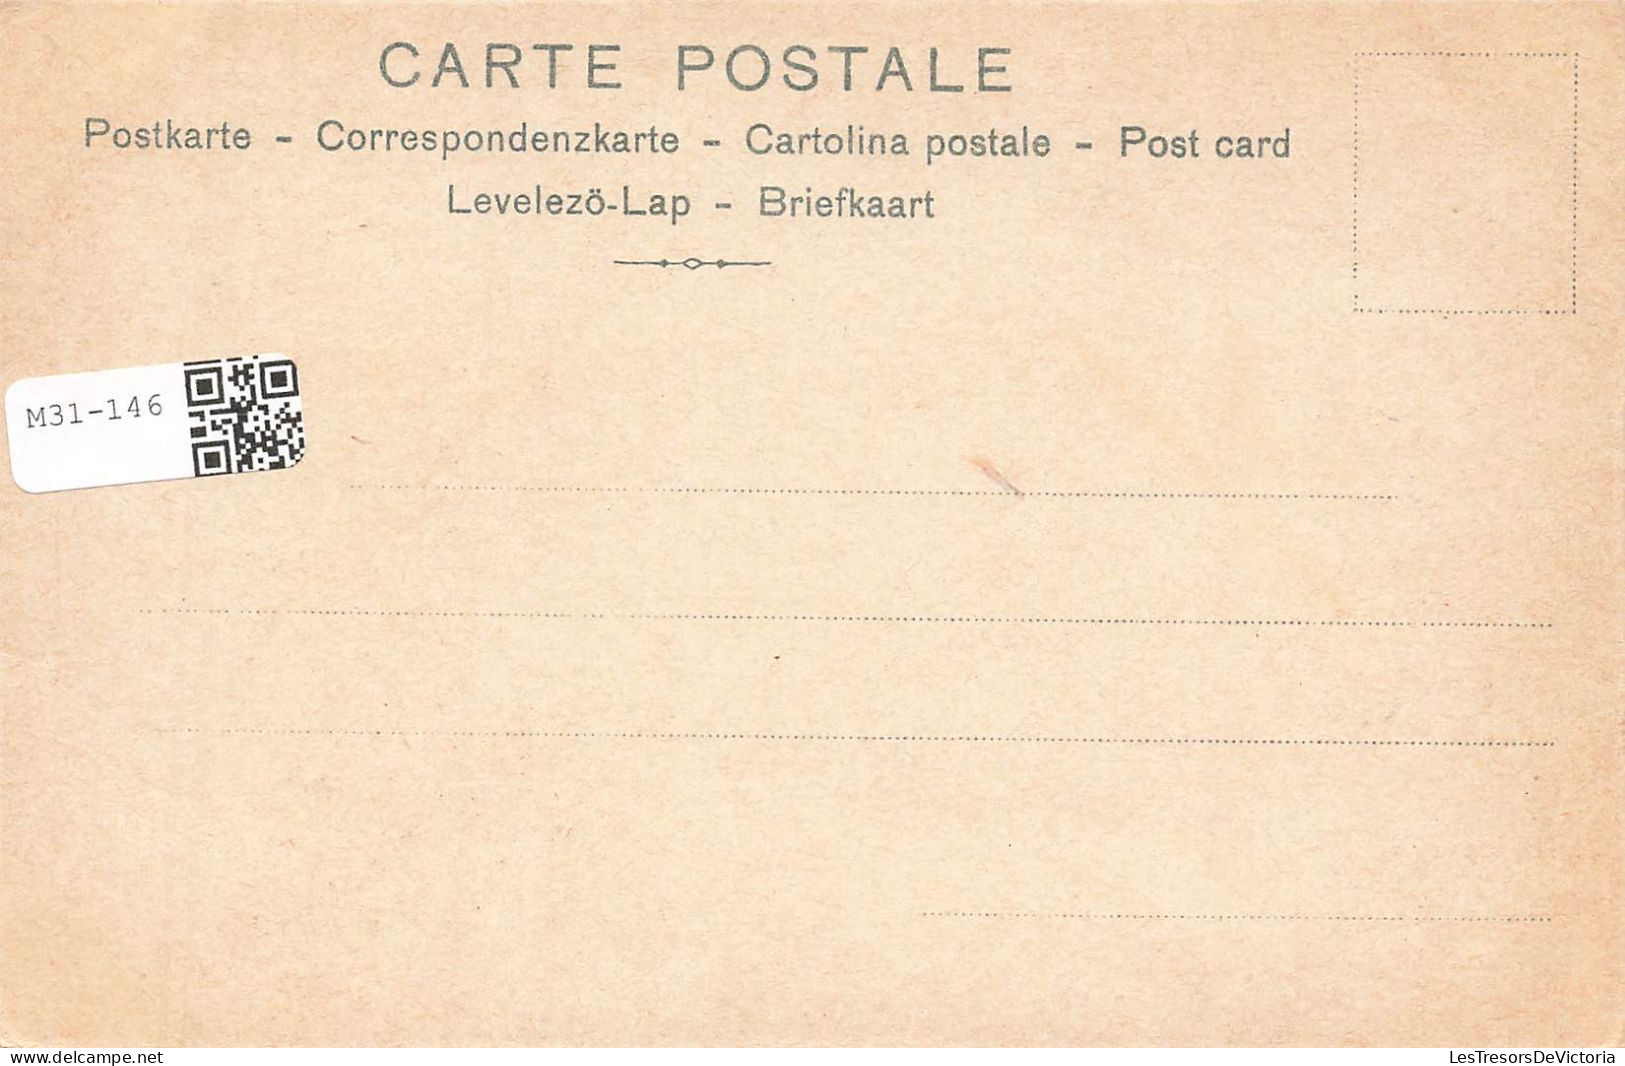 ILLUSTRATEUR NON SIGNE - Au Seuil De L’intimité Conjugale : La Chambre Nuptiale - Enfin Seuls - Carte Postale Ancienne - Vor 1900